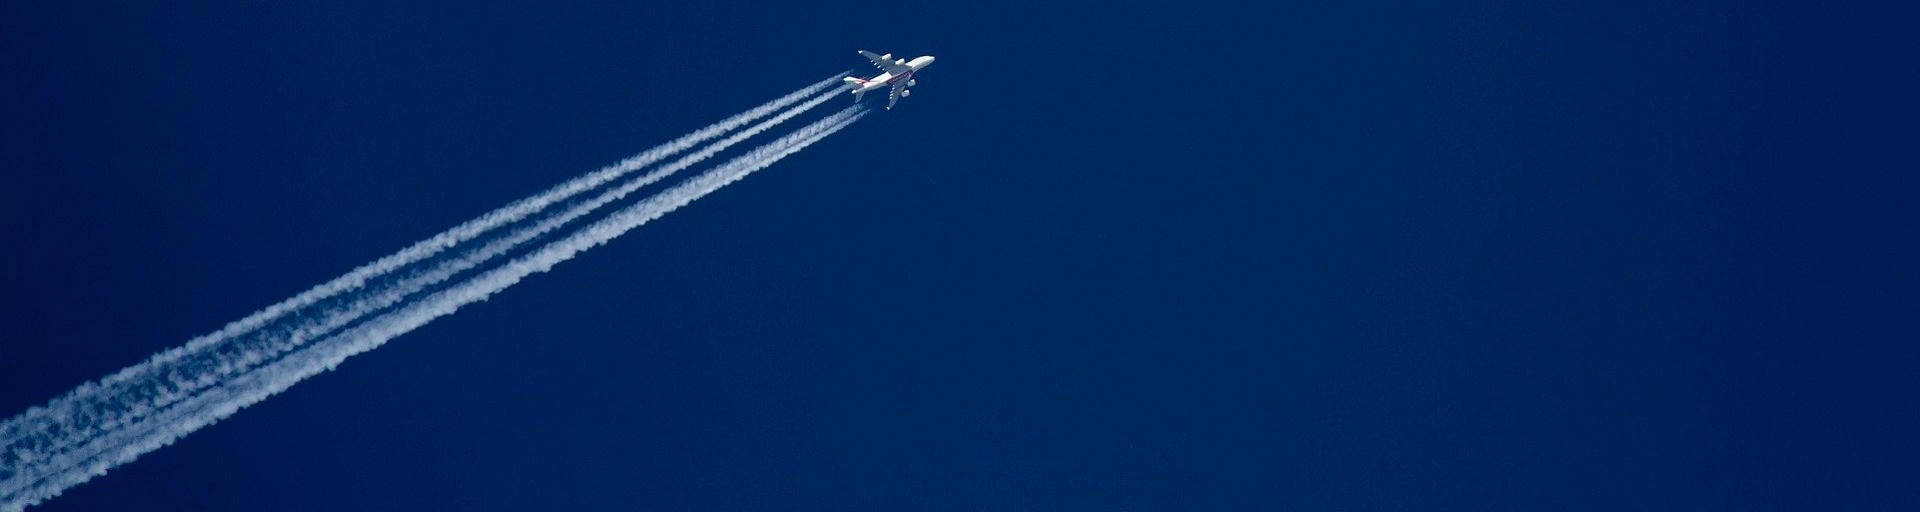 Flugzeug mit Kondensstreifen im Himmel